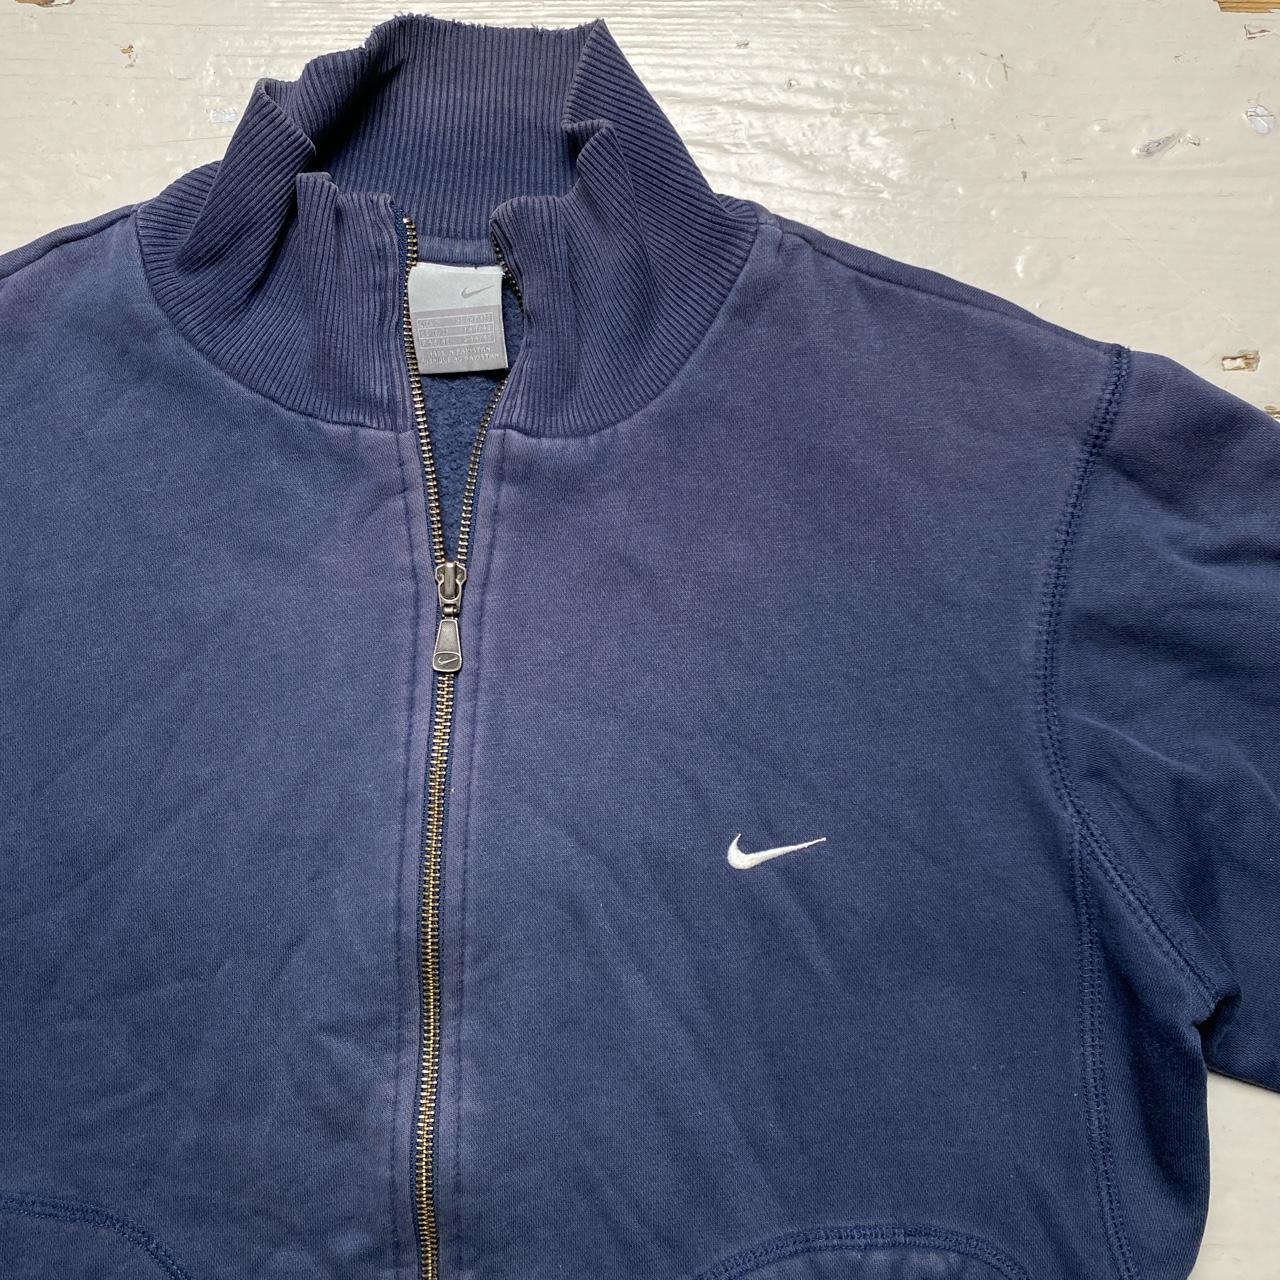 Nike Swoosh Navy and White Vintage Tracksuit Jacket